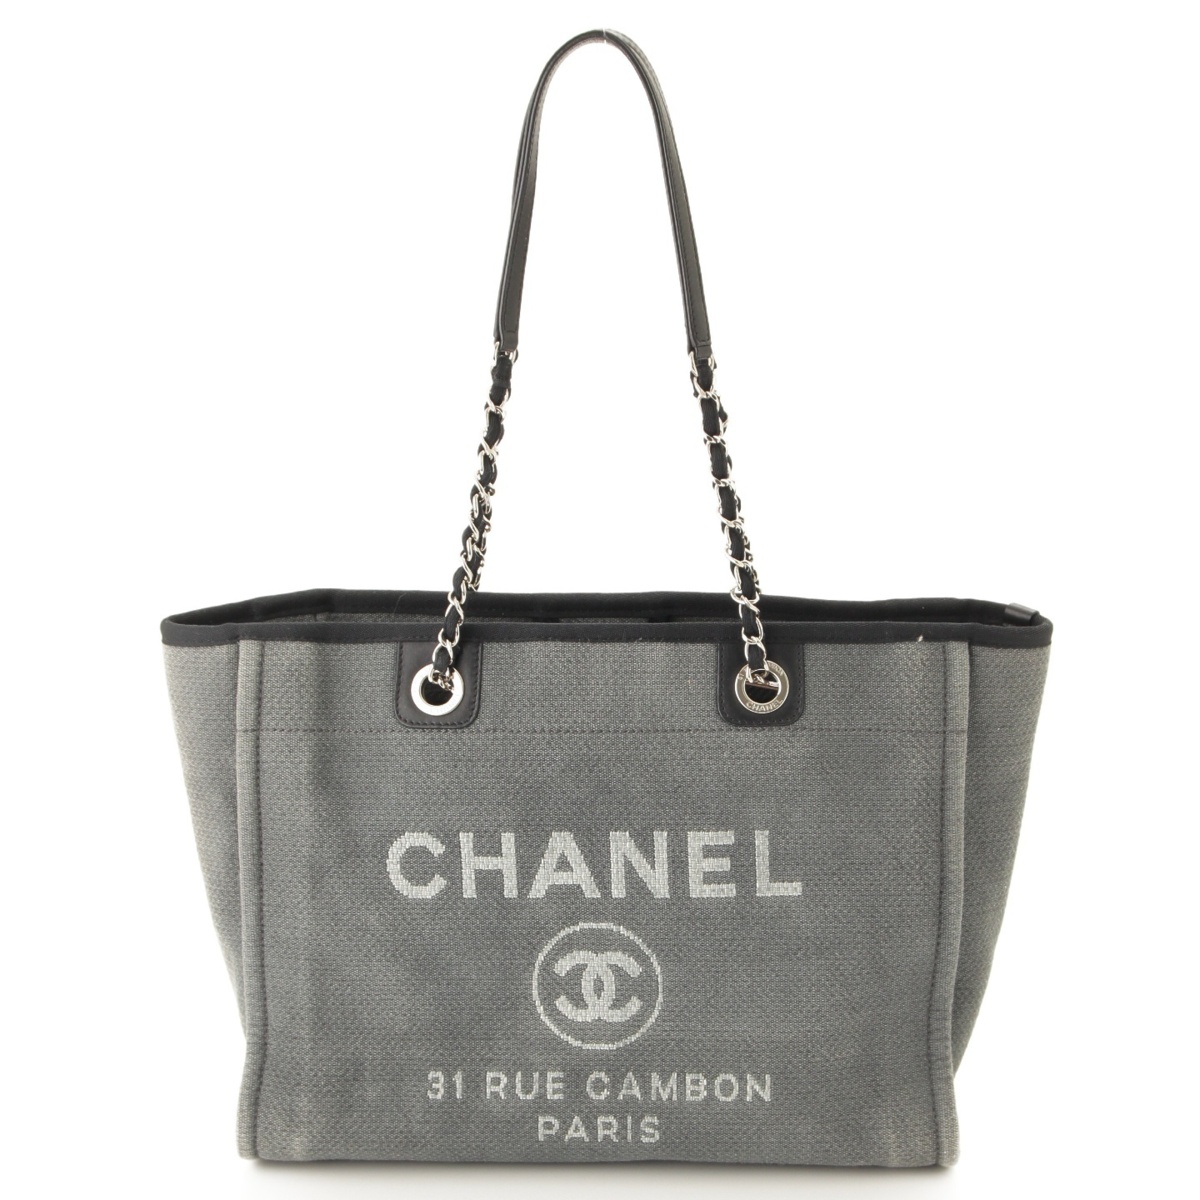 シャネル(Chanel) ドーヴィルMM キャンバス チェーン トートバッグ A67001 グレー